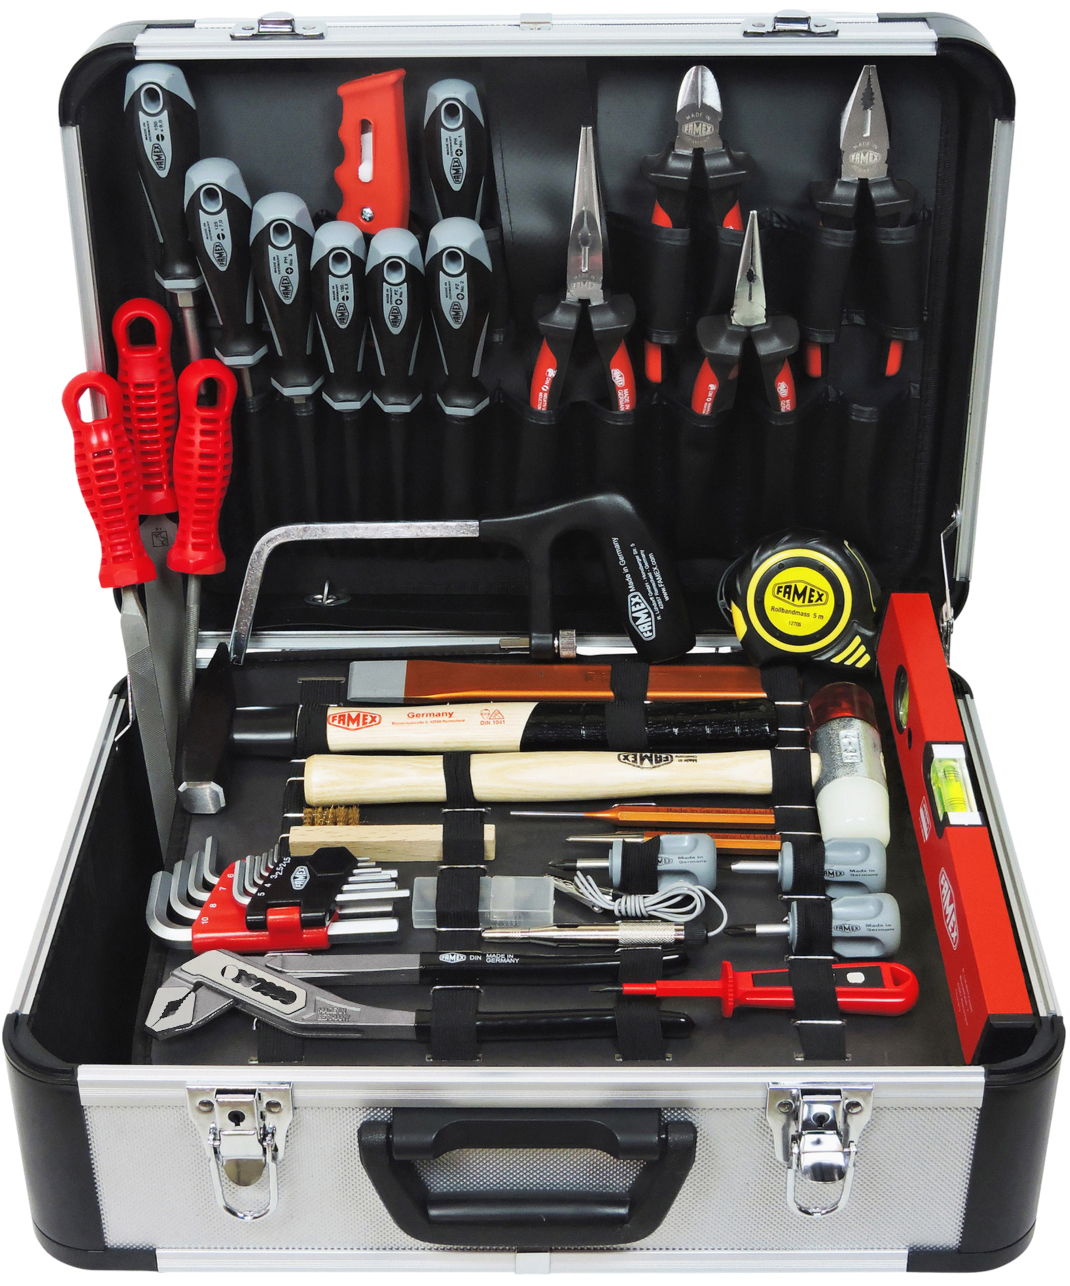 online kaufen Top-Werkzeugbestückung - FAMEX 720-21 Steckschlüsselsatz Werkzeuge Werkzeugkoffer-Komplettset günstig und mit Mechaniker